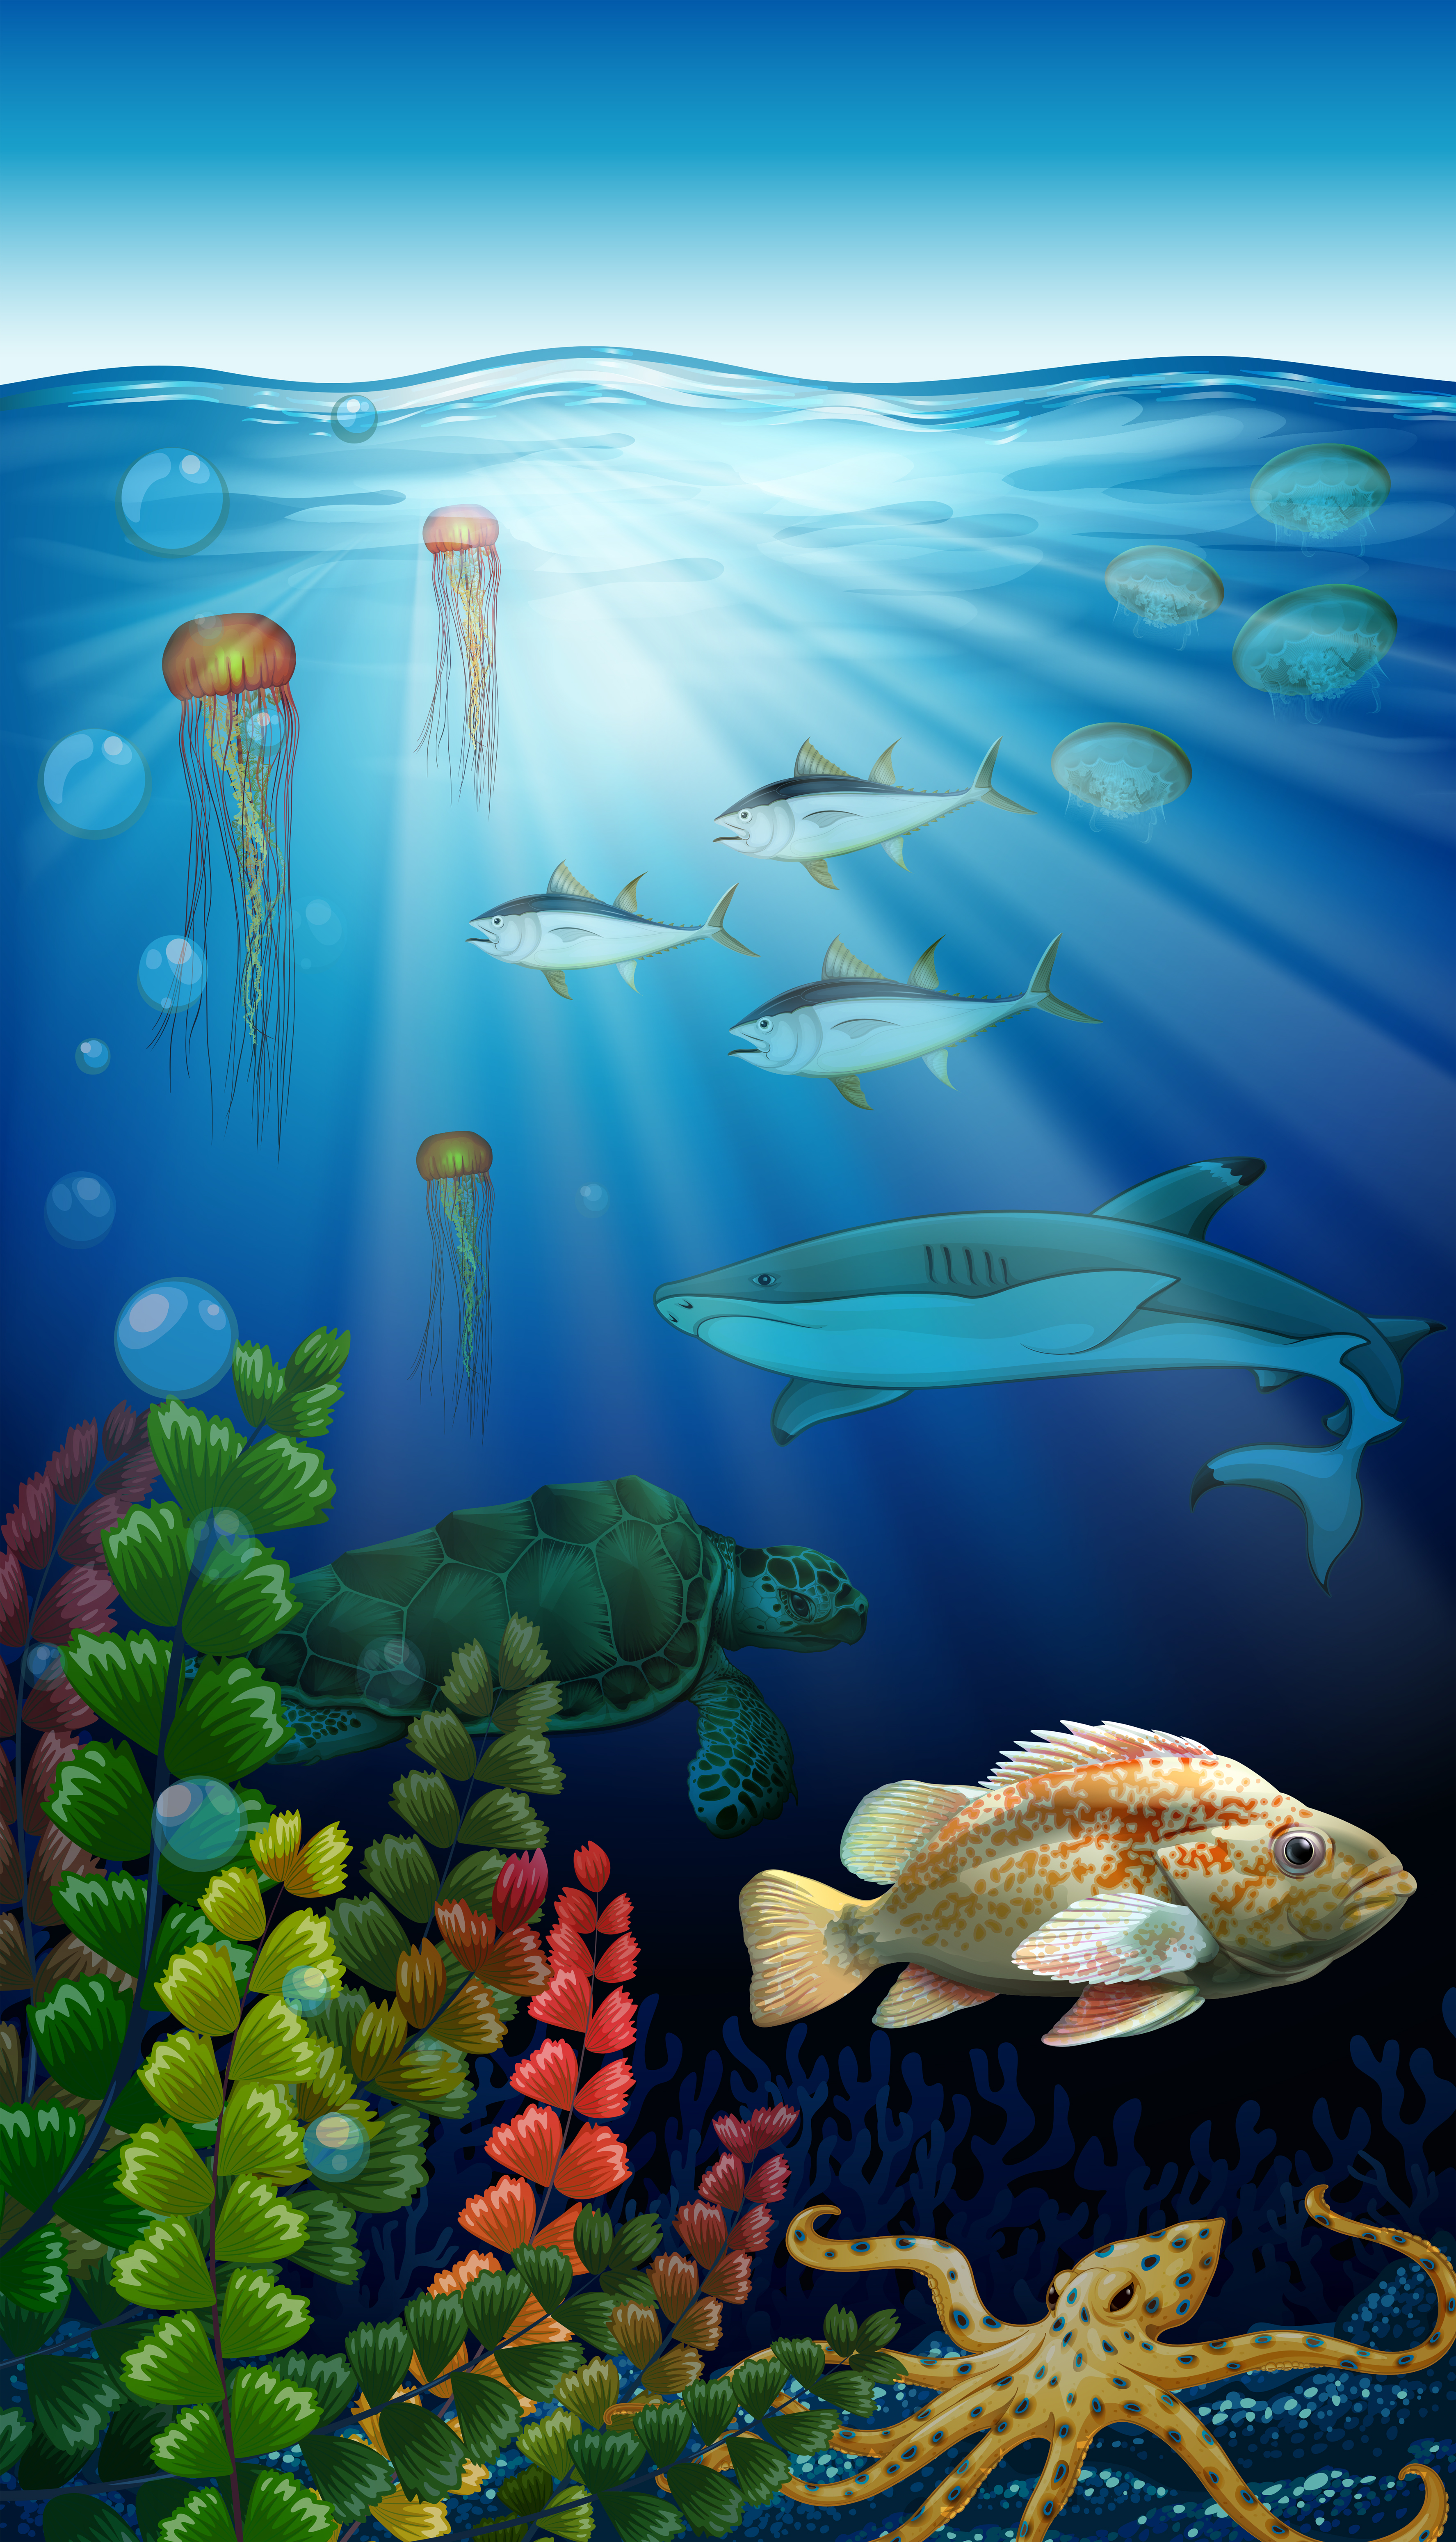 Sea animals living under the ocean 591610 Vector Art at Vecteezy